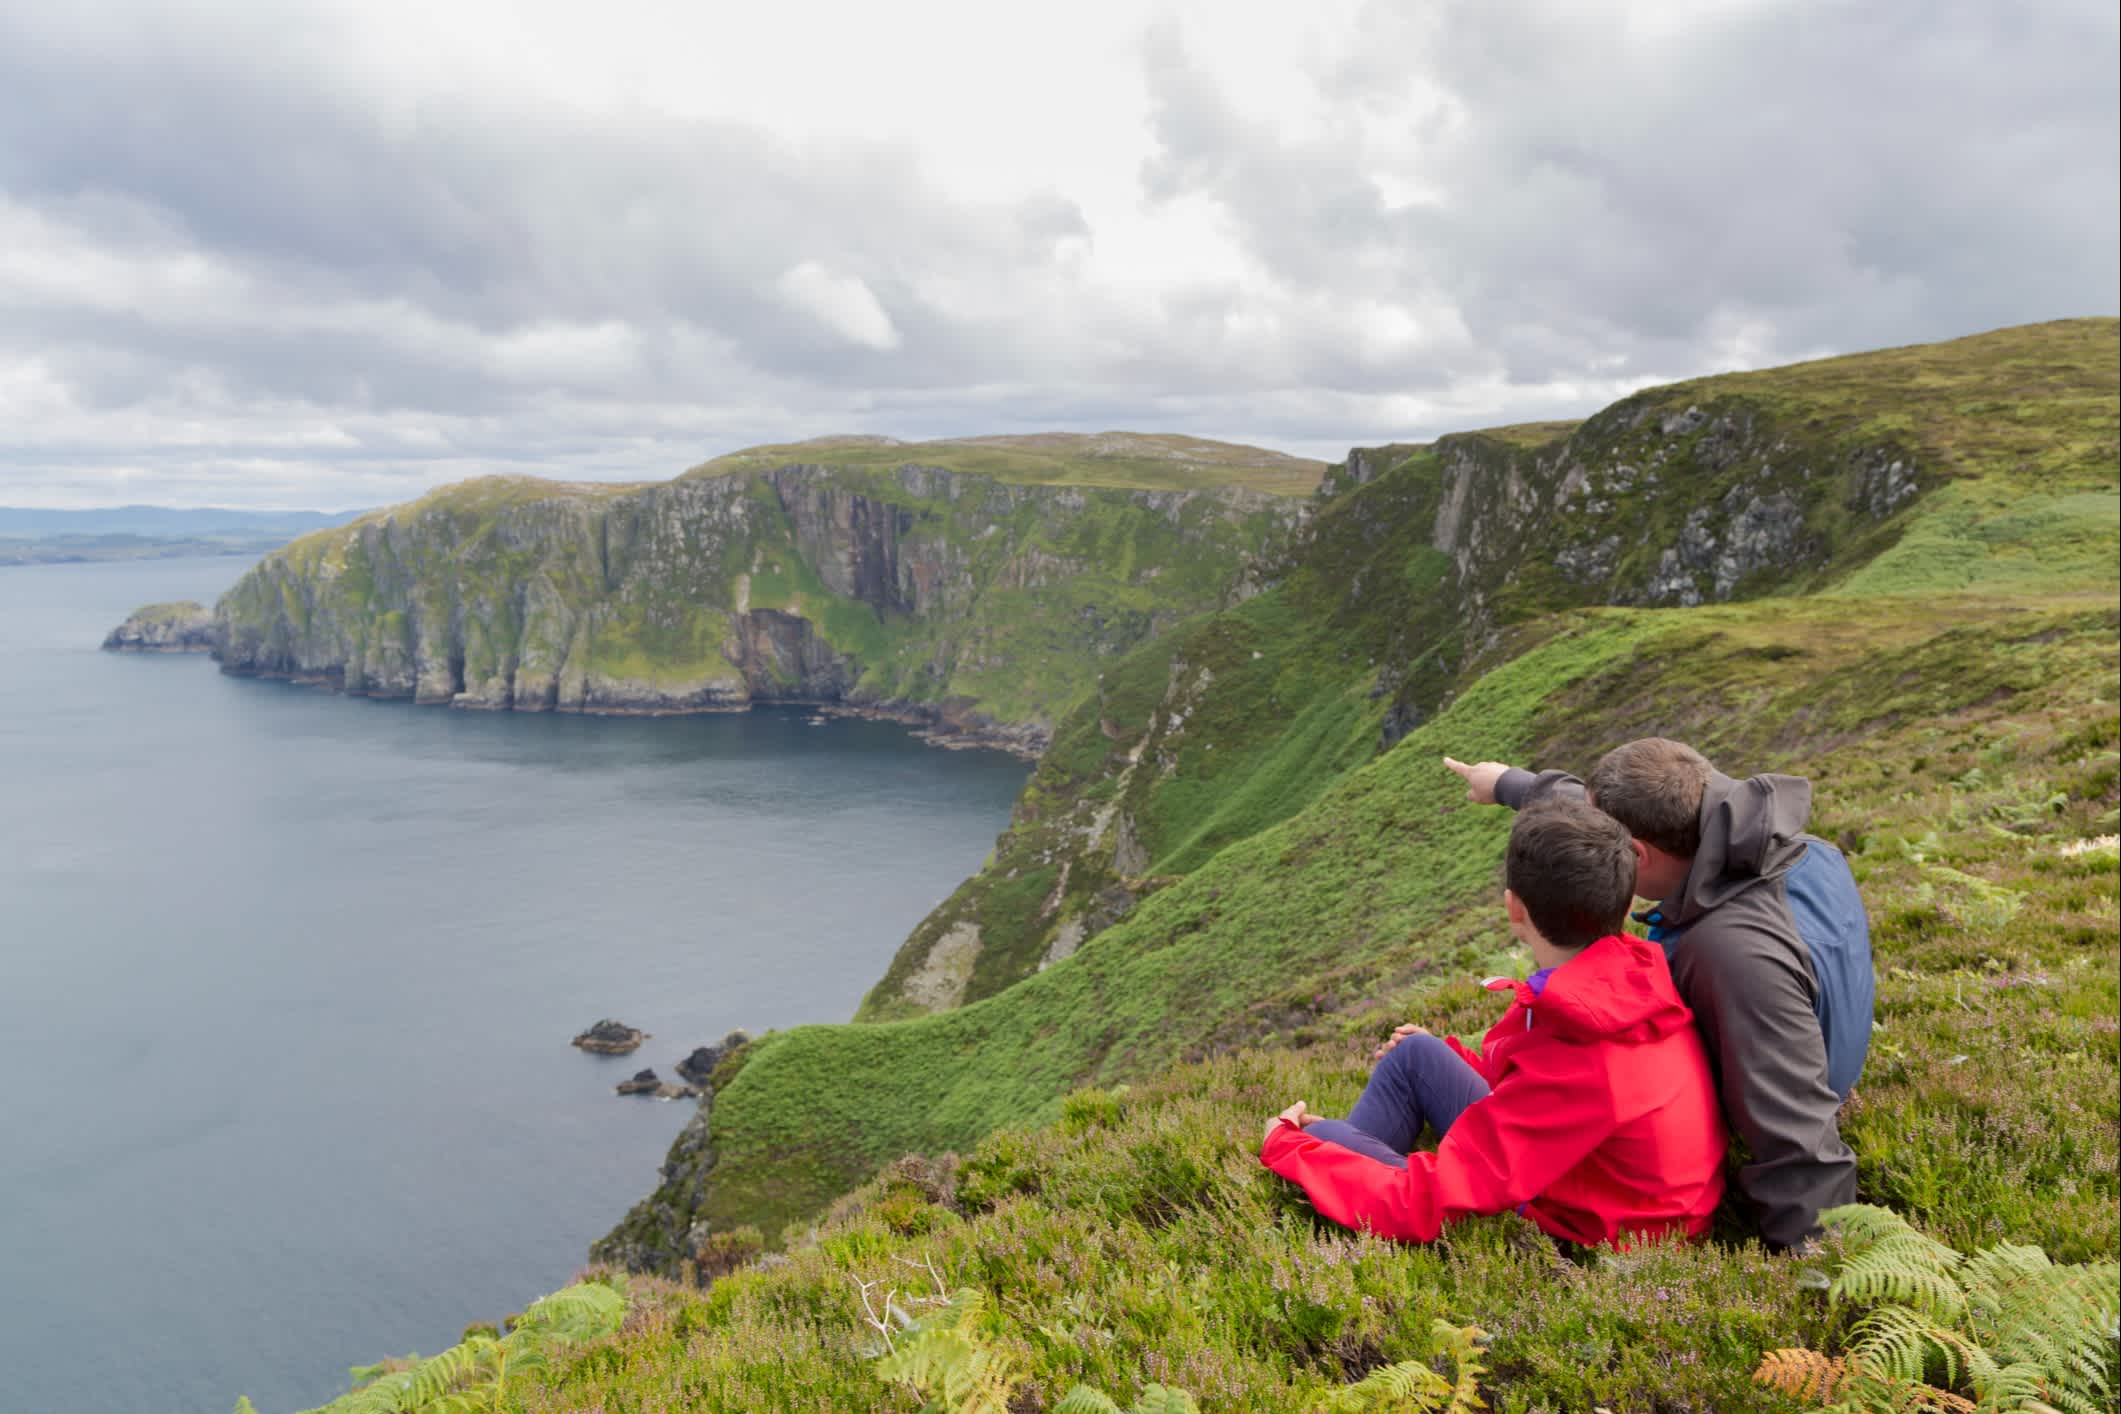 Vater und Sohn bewundern die Landschaft von Horn Head in Irland.
